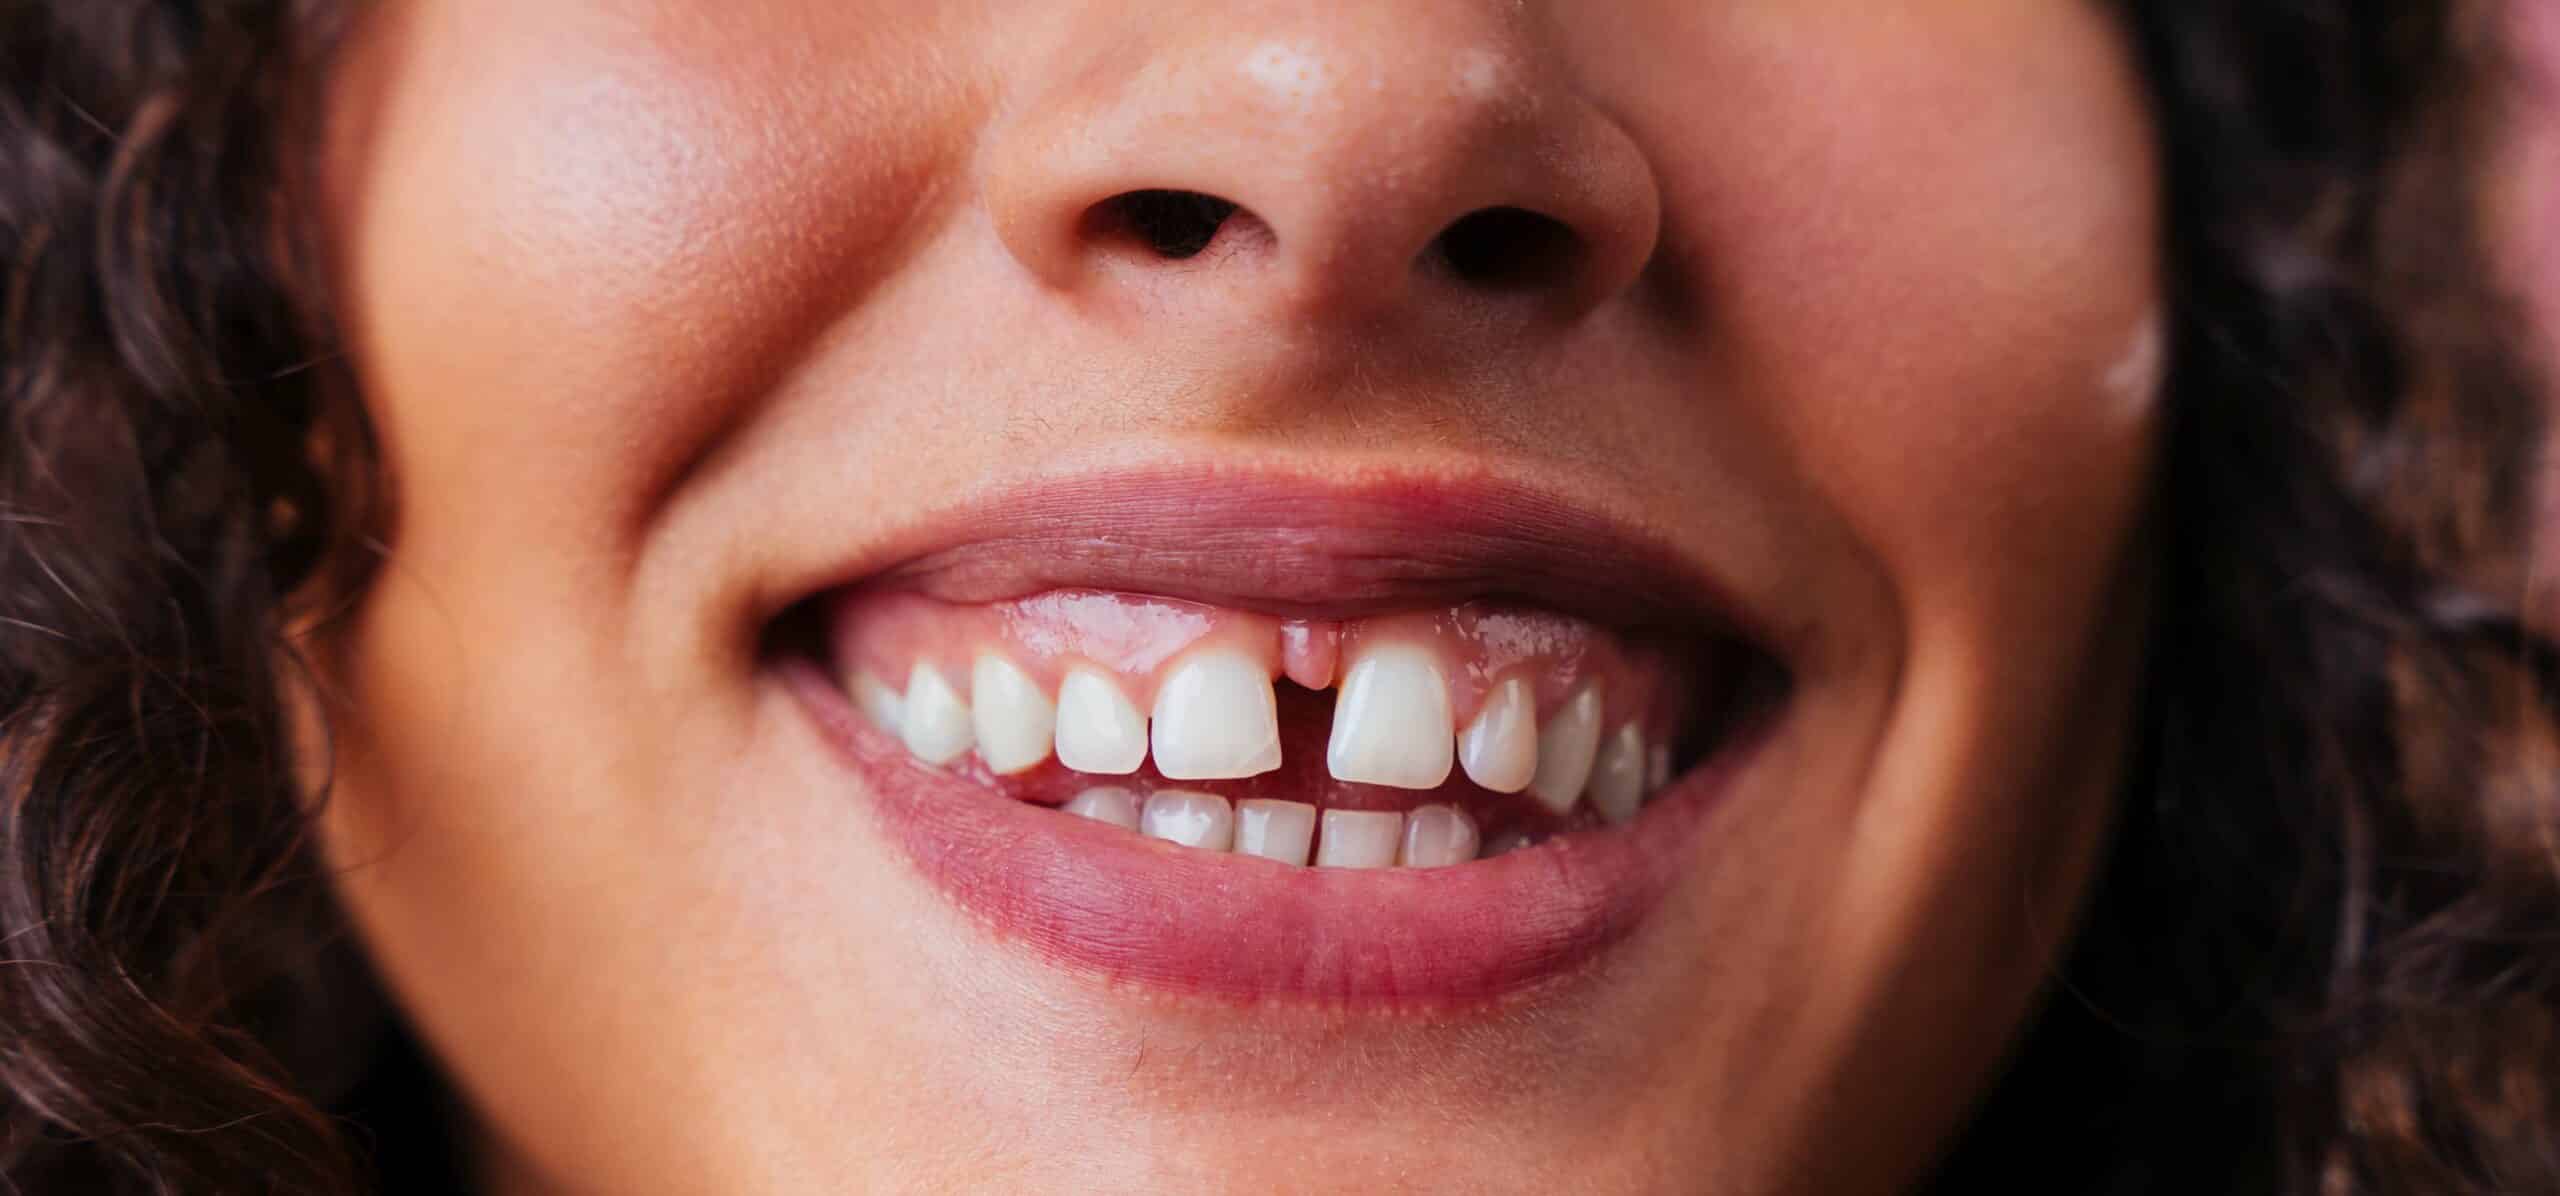 Les facettes dentaires : une solution pour corriger les dents du bonheur | Dr Temstet | Paris